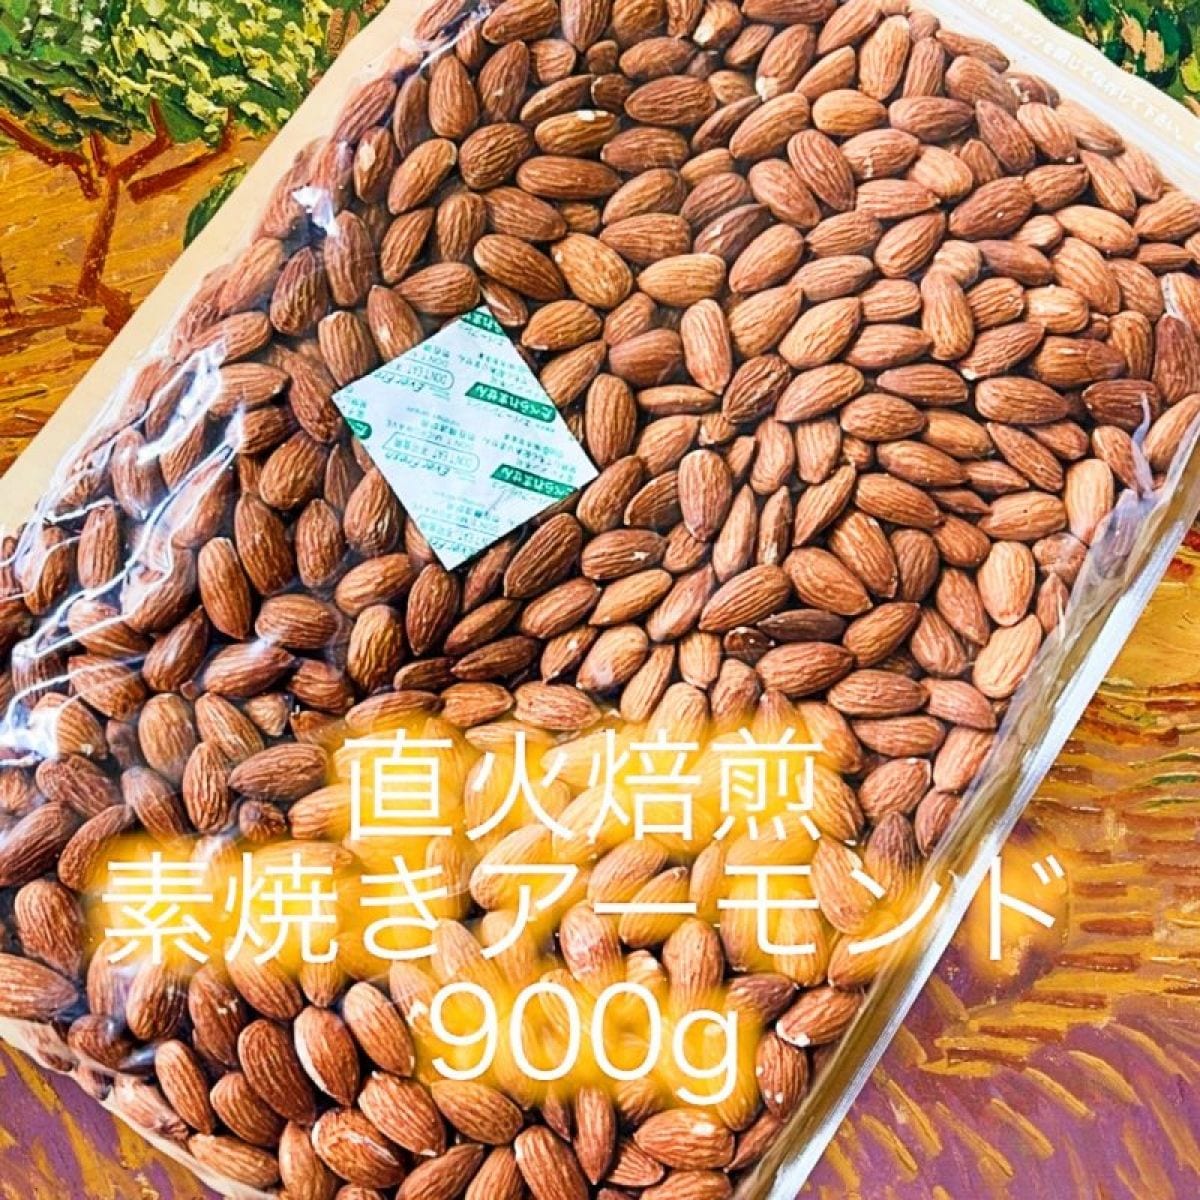 【送料込】直火焙煎素焼きアーモンド900g×1袋/訳あり商品